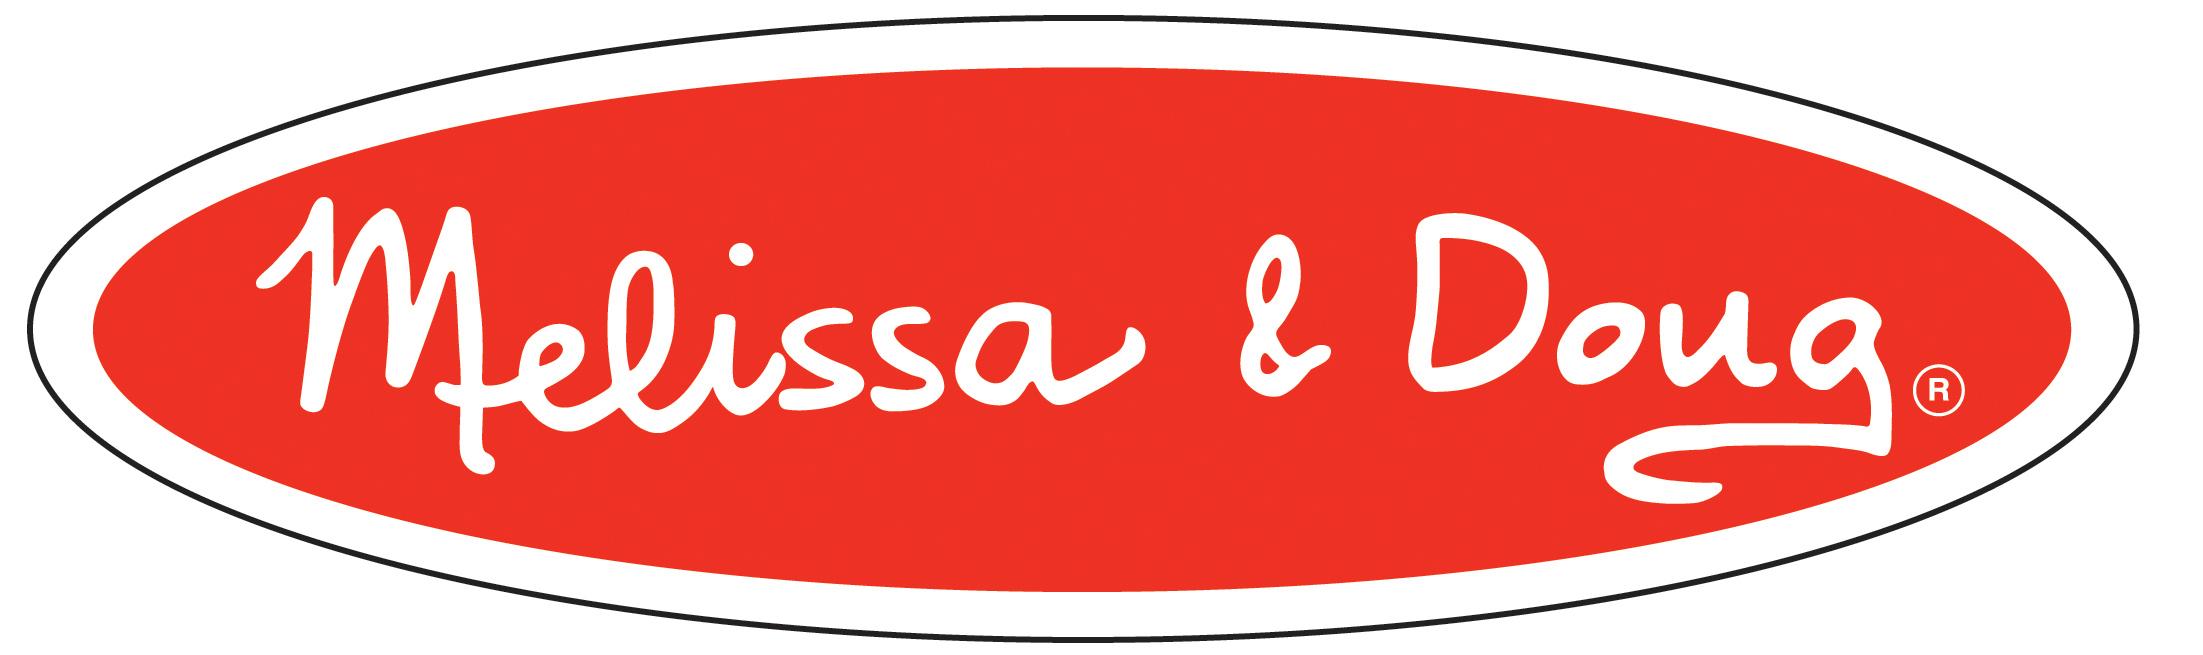 Melissa and Doug logo.jpg